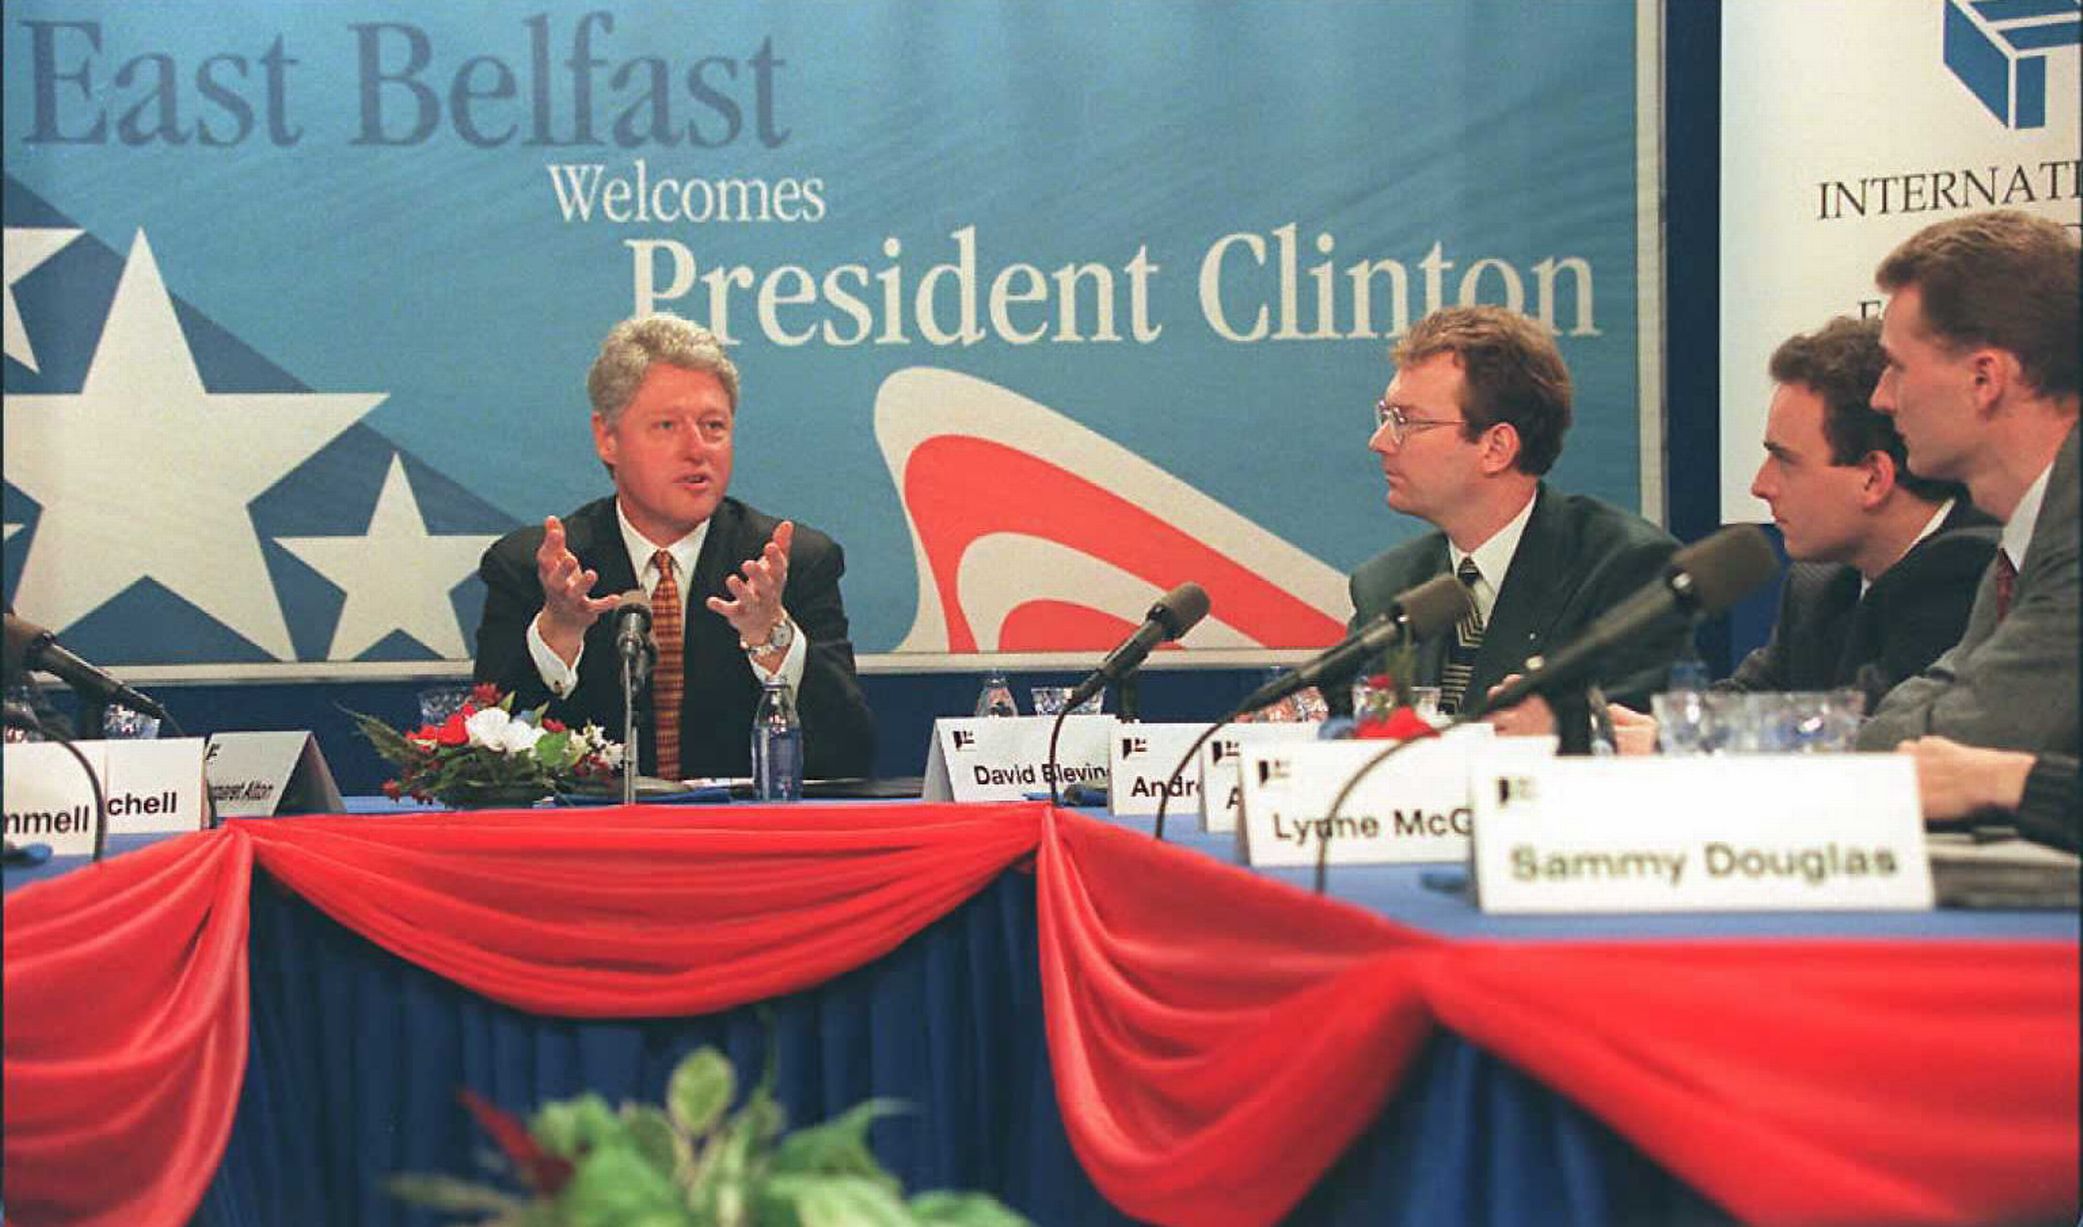 Καταλυτική θέση λαμβάνει ο Μπιλ Κλίντον για τη διευθέτηση της πολιτικής ανωμαλίας στη Β.Ιρλανδία